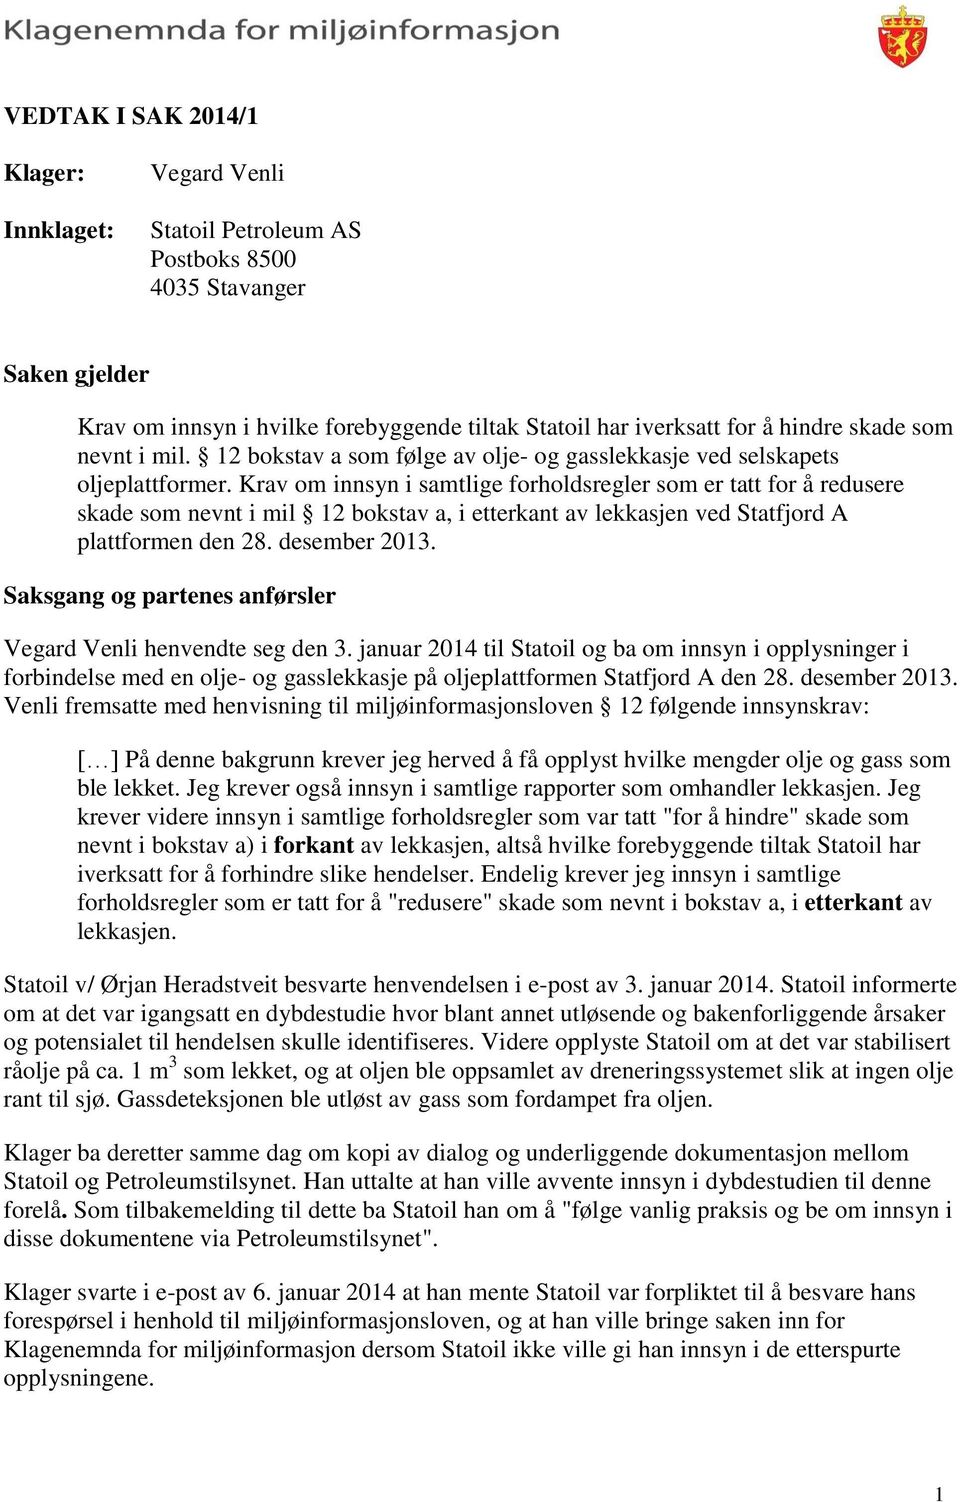 Krav om innsyn i samtlige forholdsregler som er tatt for å redusere skade som nevnt i mil 12 bokstav a, i etterkant av lekkasjen ved Statfjord A plattformen den 28. desember 2013.